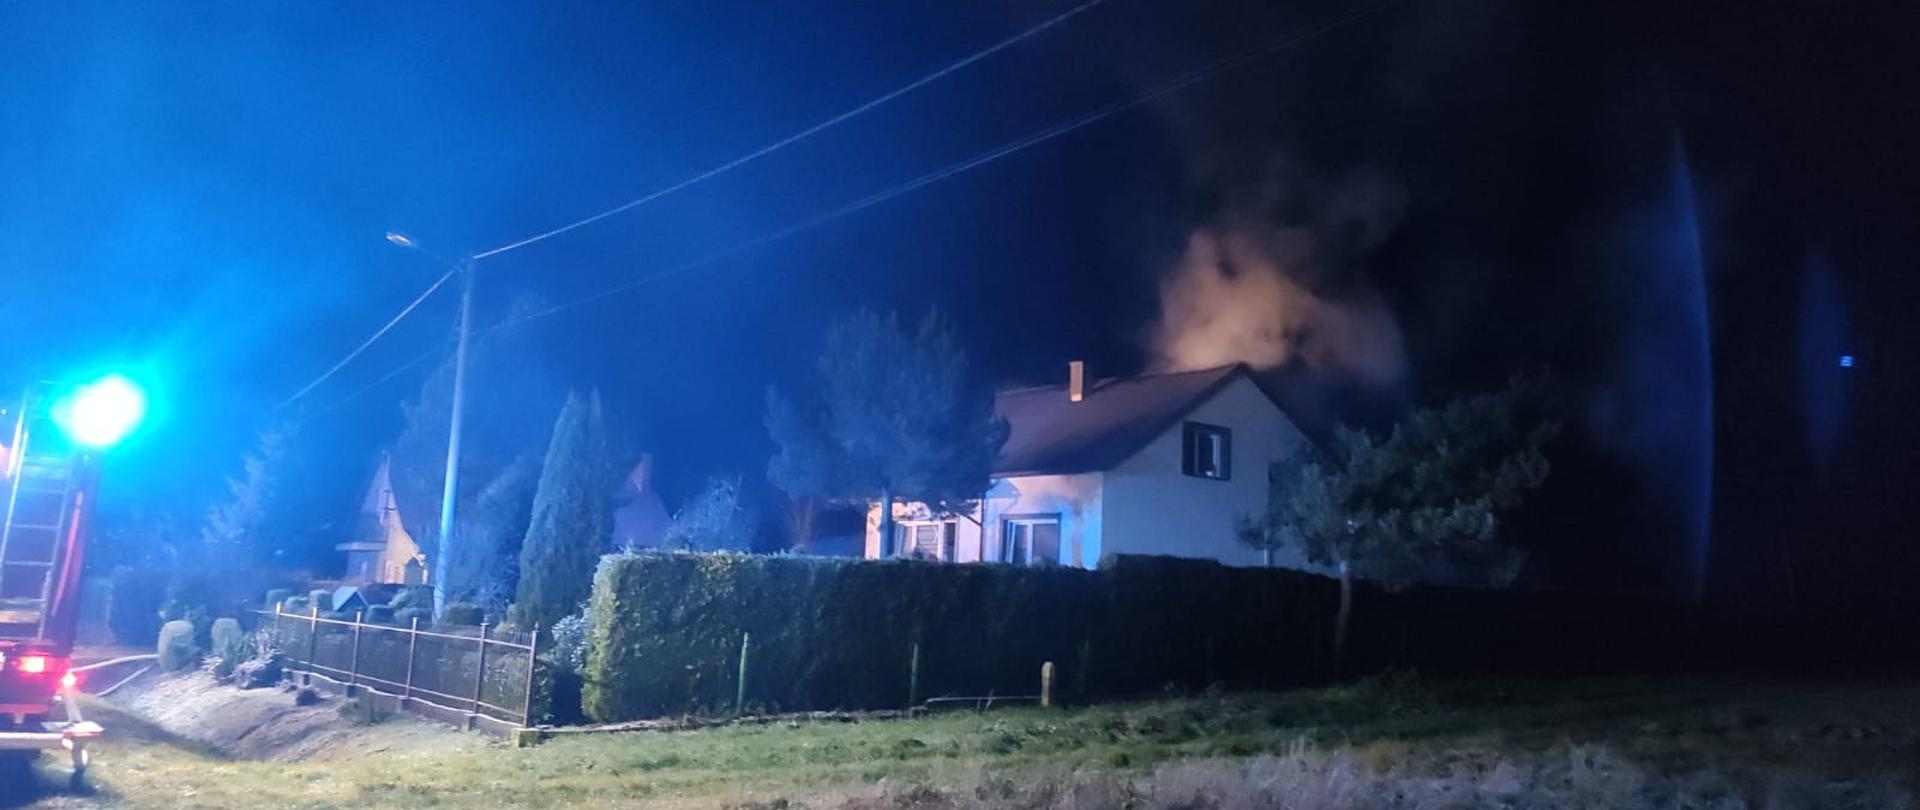 Zdjęcie przedstawia dom jednorodzinny w porze nocnej. Z nad budynku widać unoszące kłęby białego dymu.